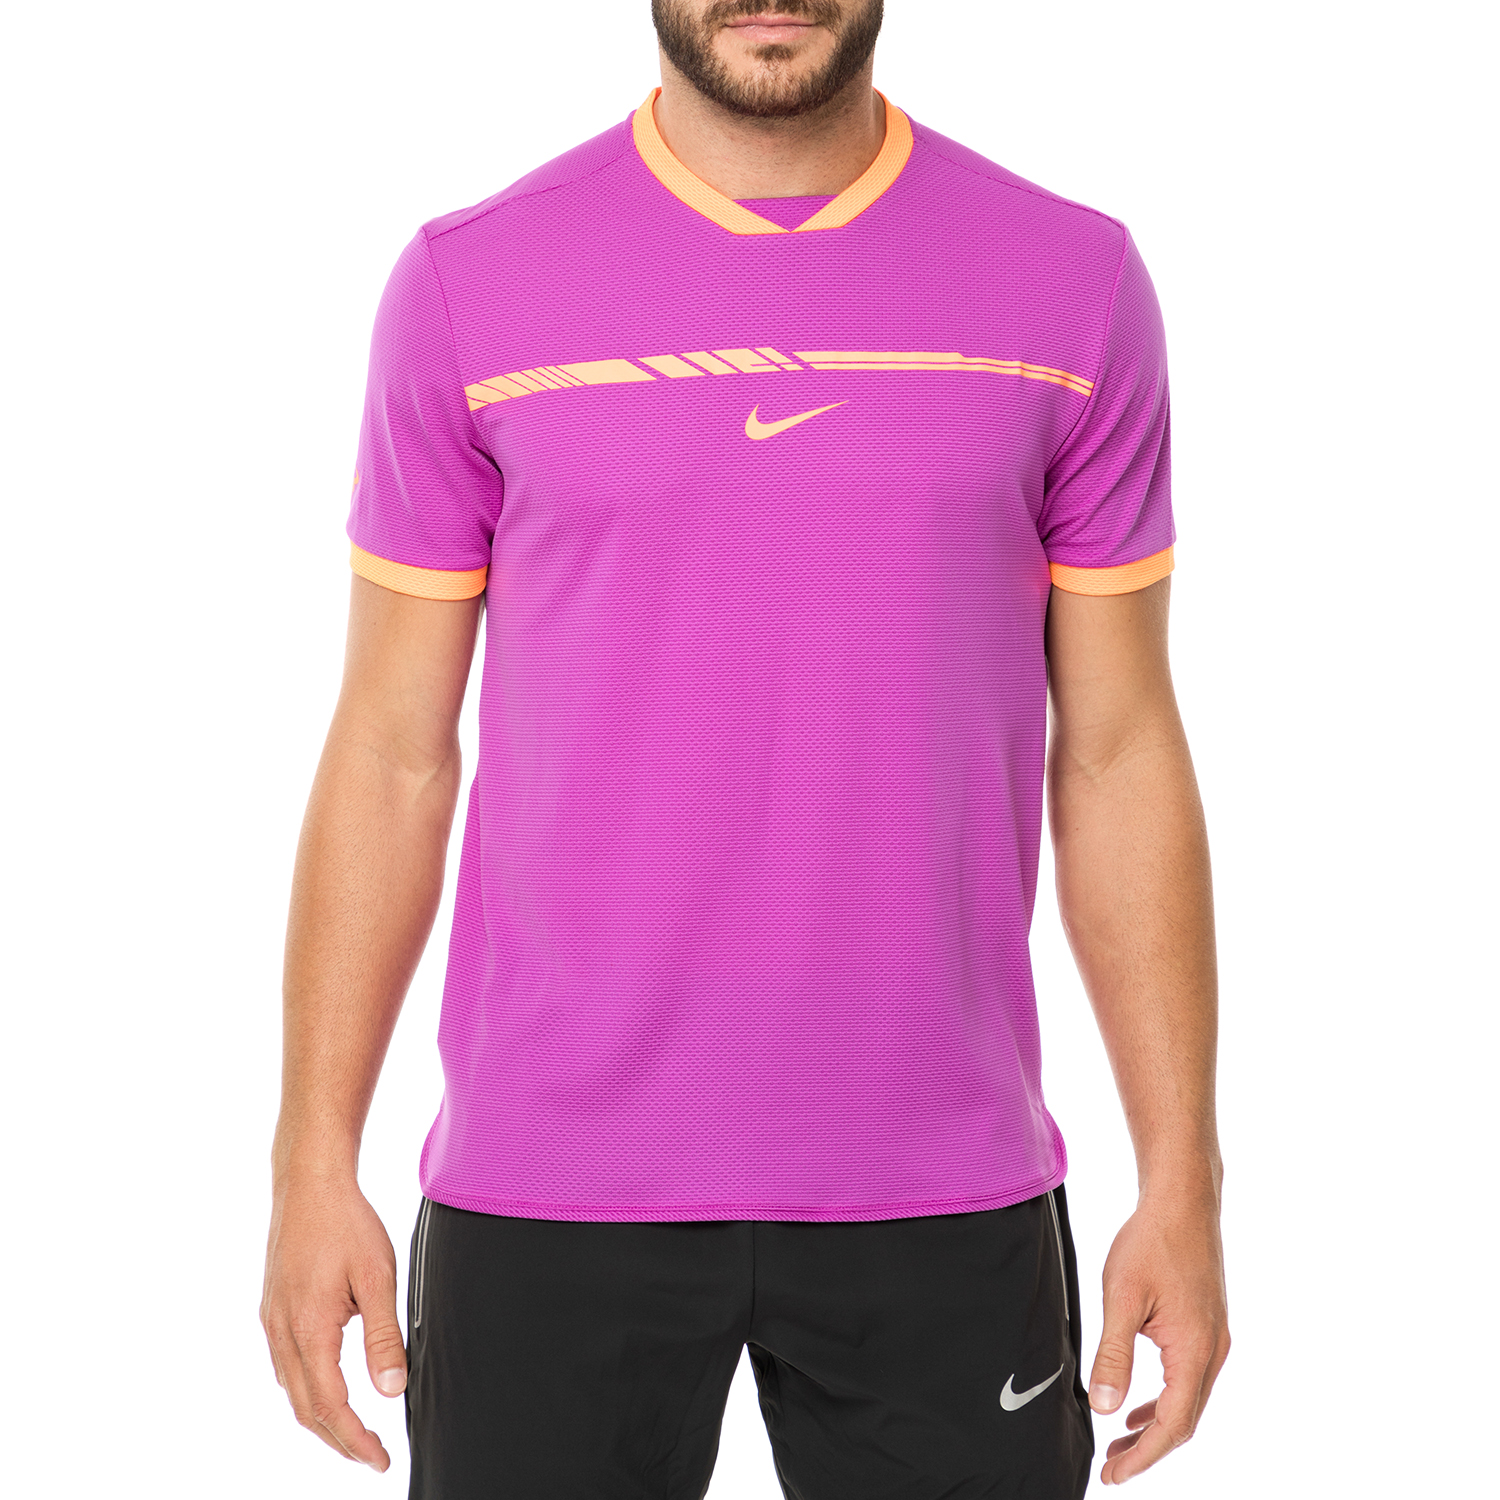 Ανδρικά/Ρούχα/Αθλητικά/T-shirt NIKE - Ανδρικό t-shirt τένις Nike Court AeroReact Rafa Challenger μοβ